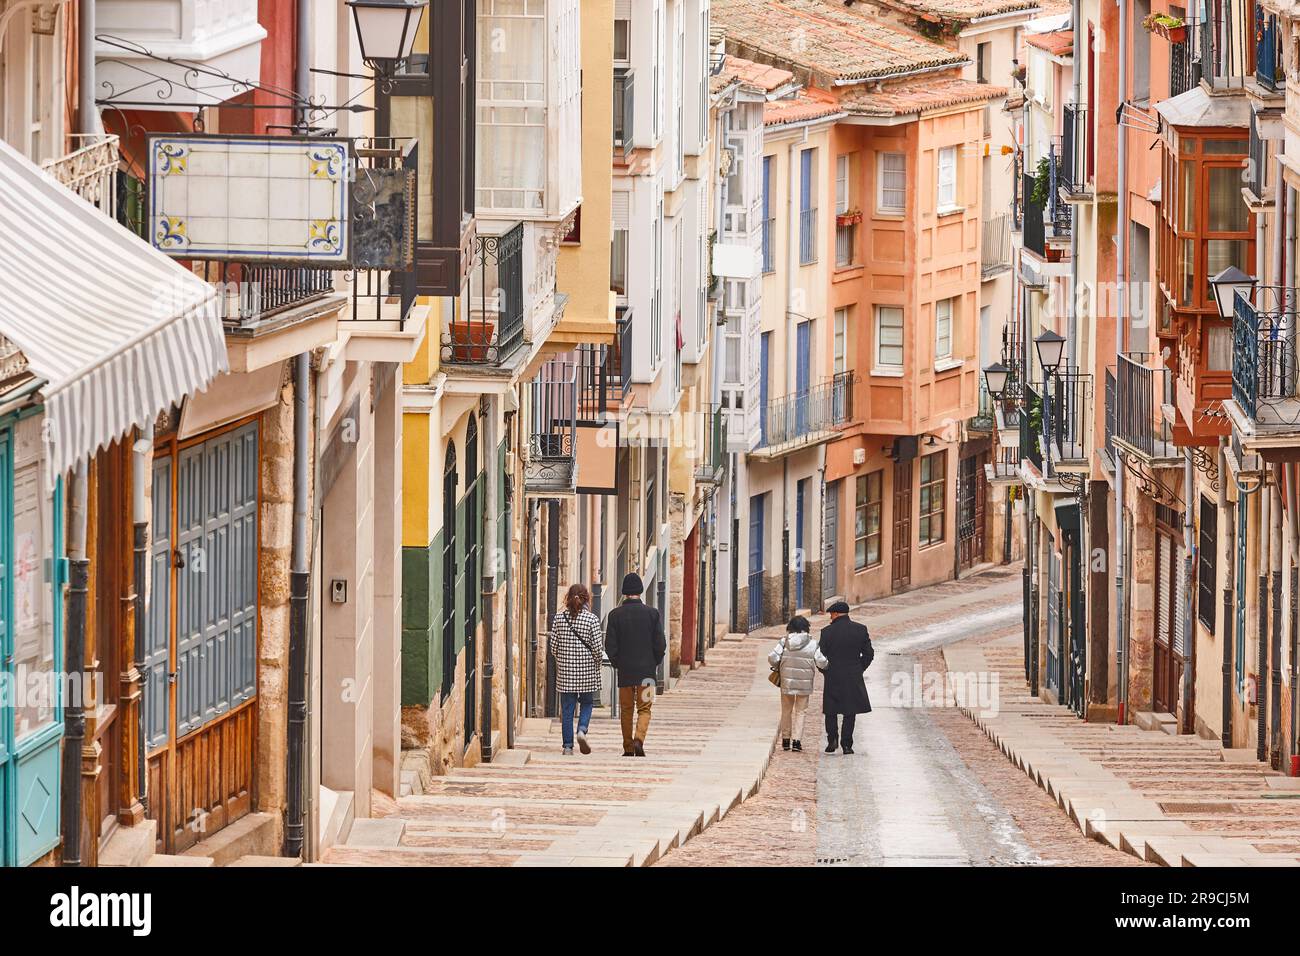 Picturesque street with colorful facades in Zamora city center. Balborraz Stock Photo